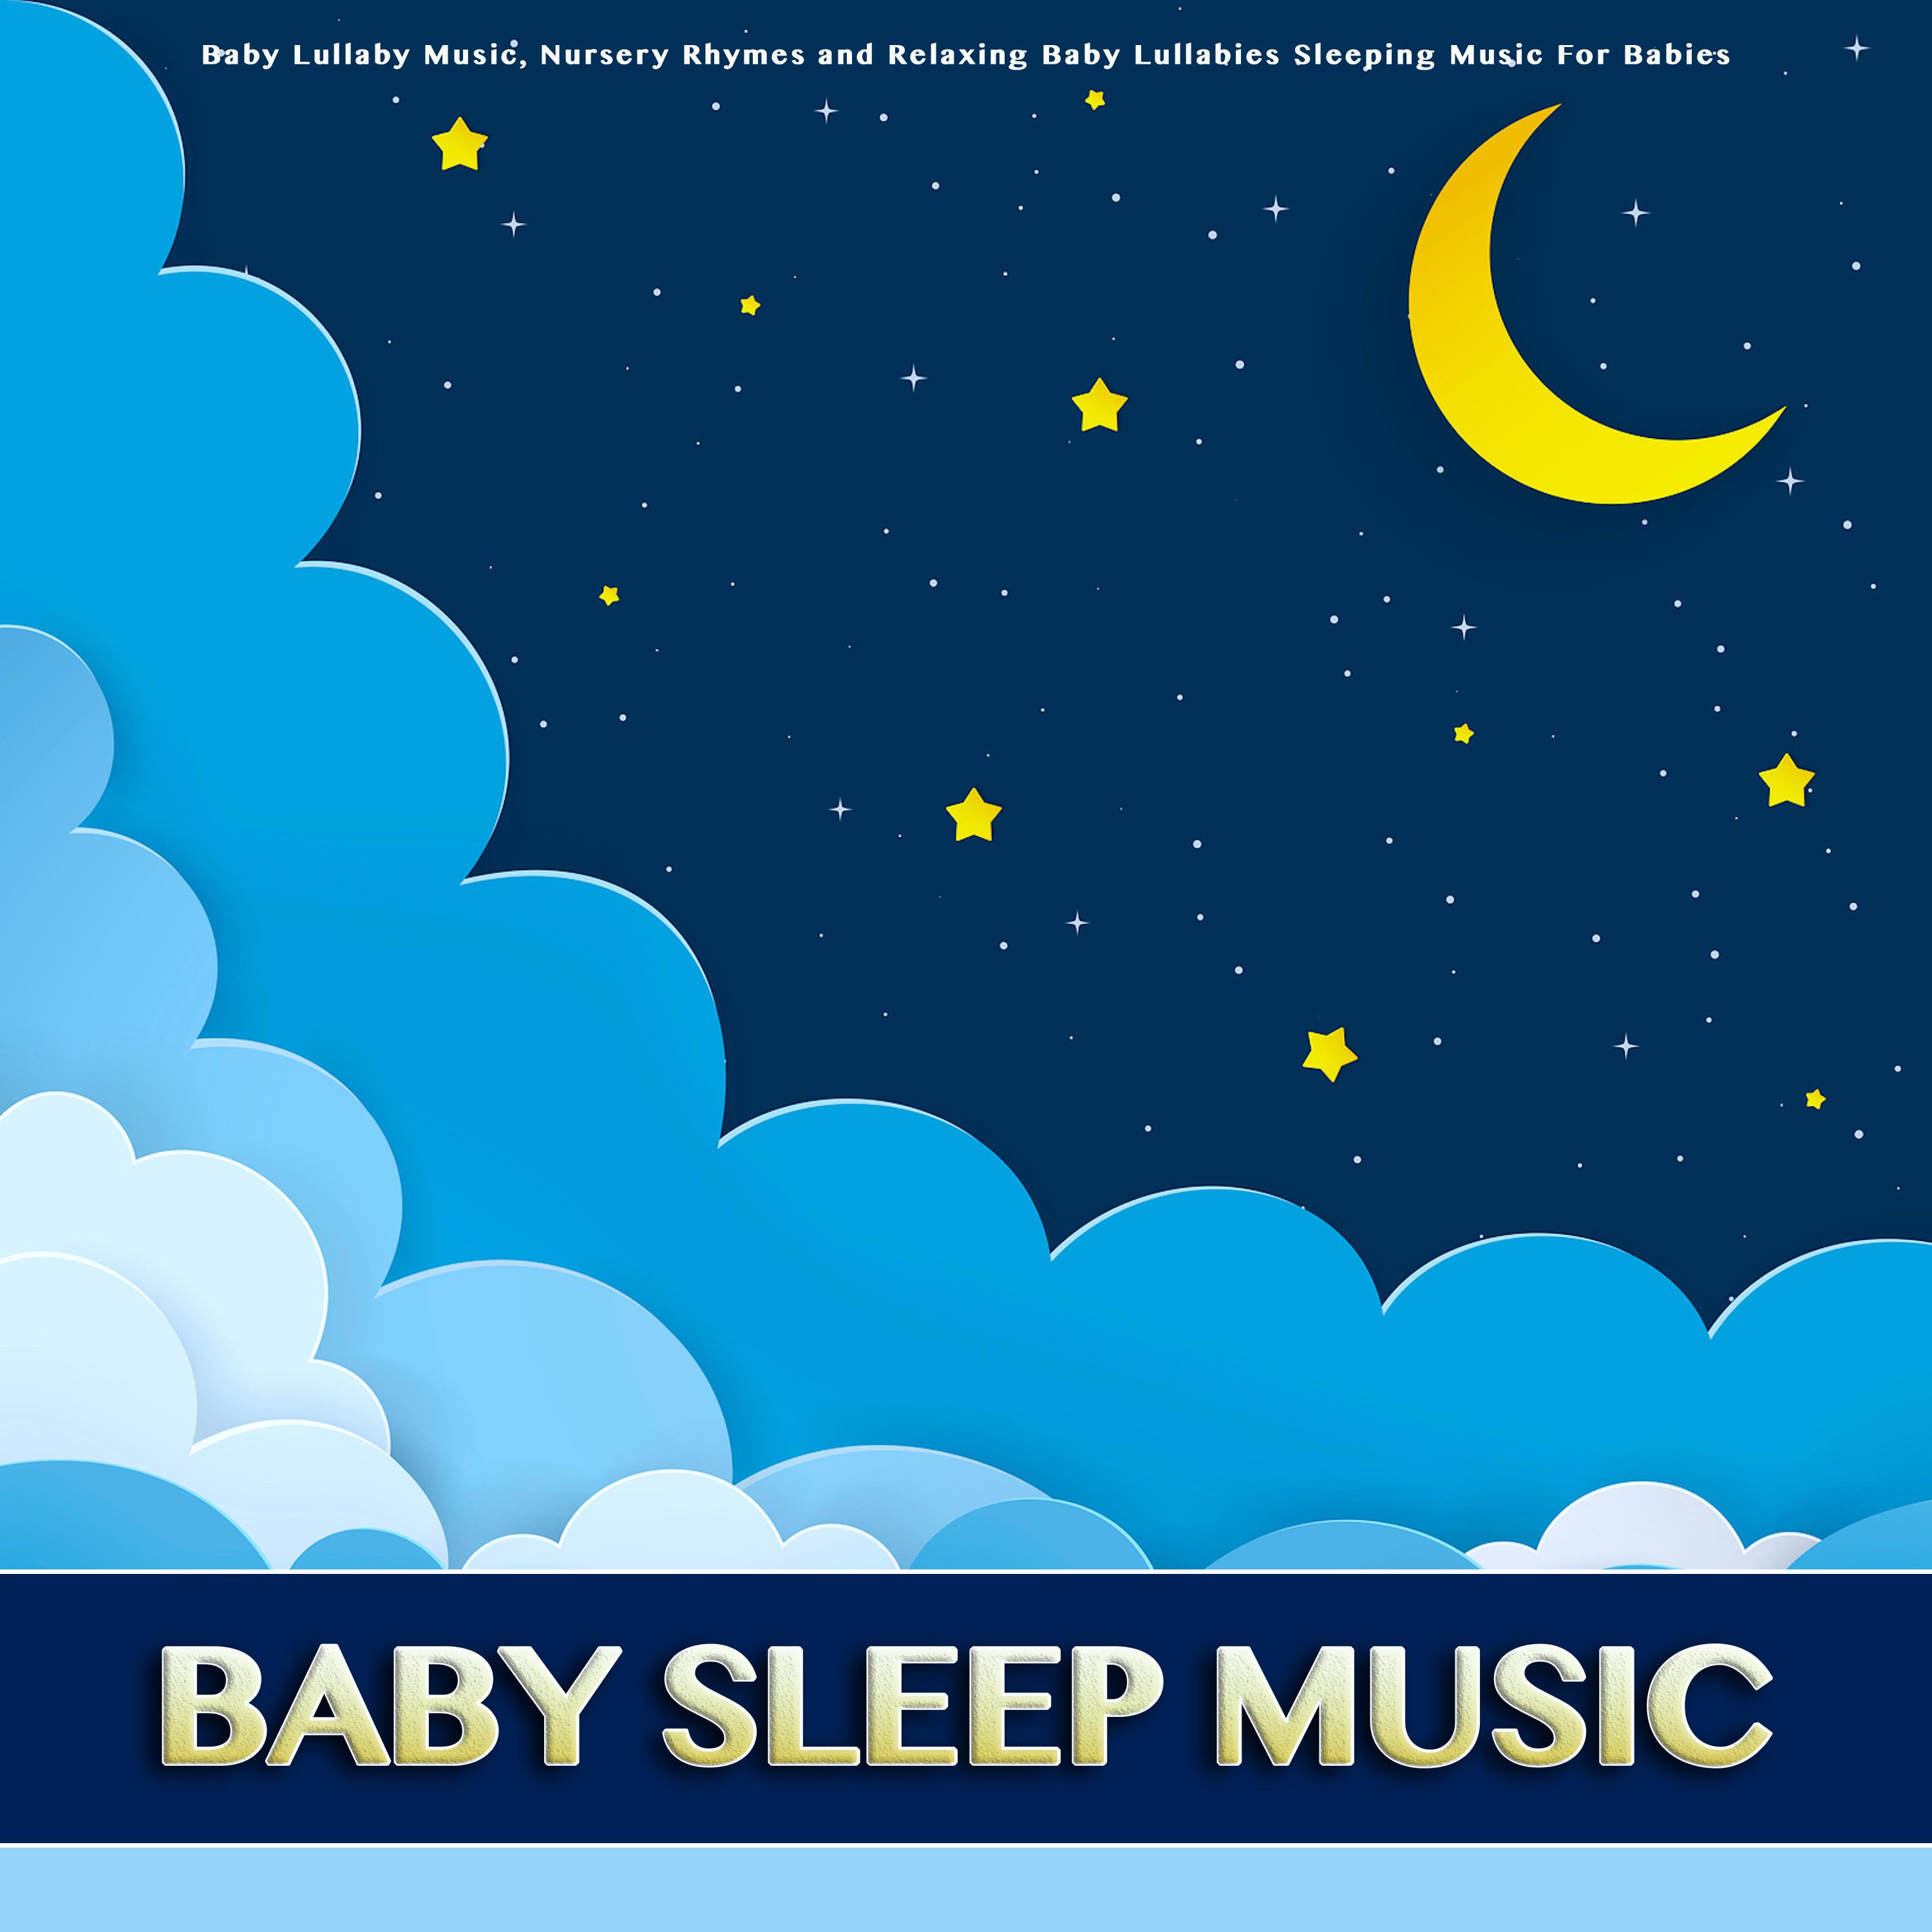 Brahms Lullaby - Baby Sleep Music - Baby Lullabies - Nursery Rhymes